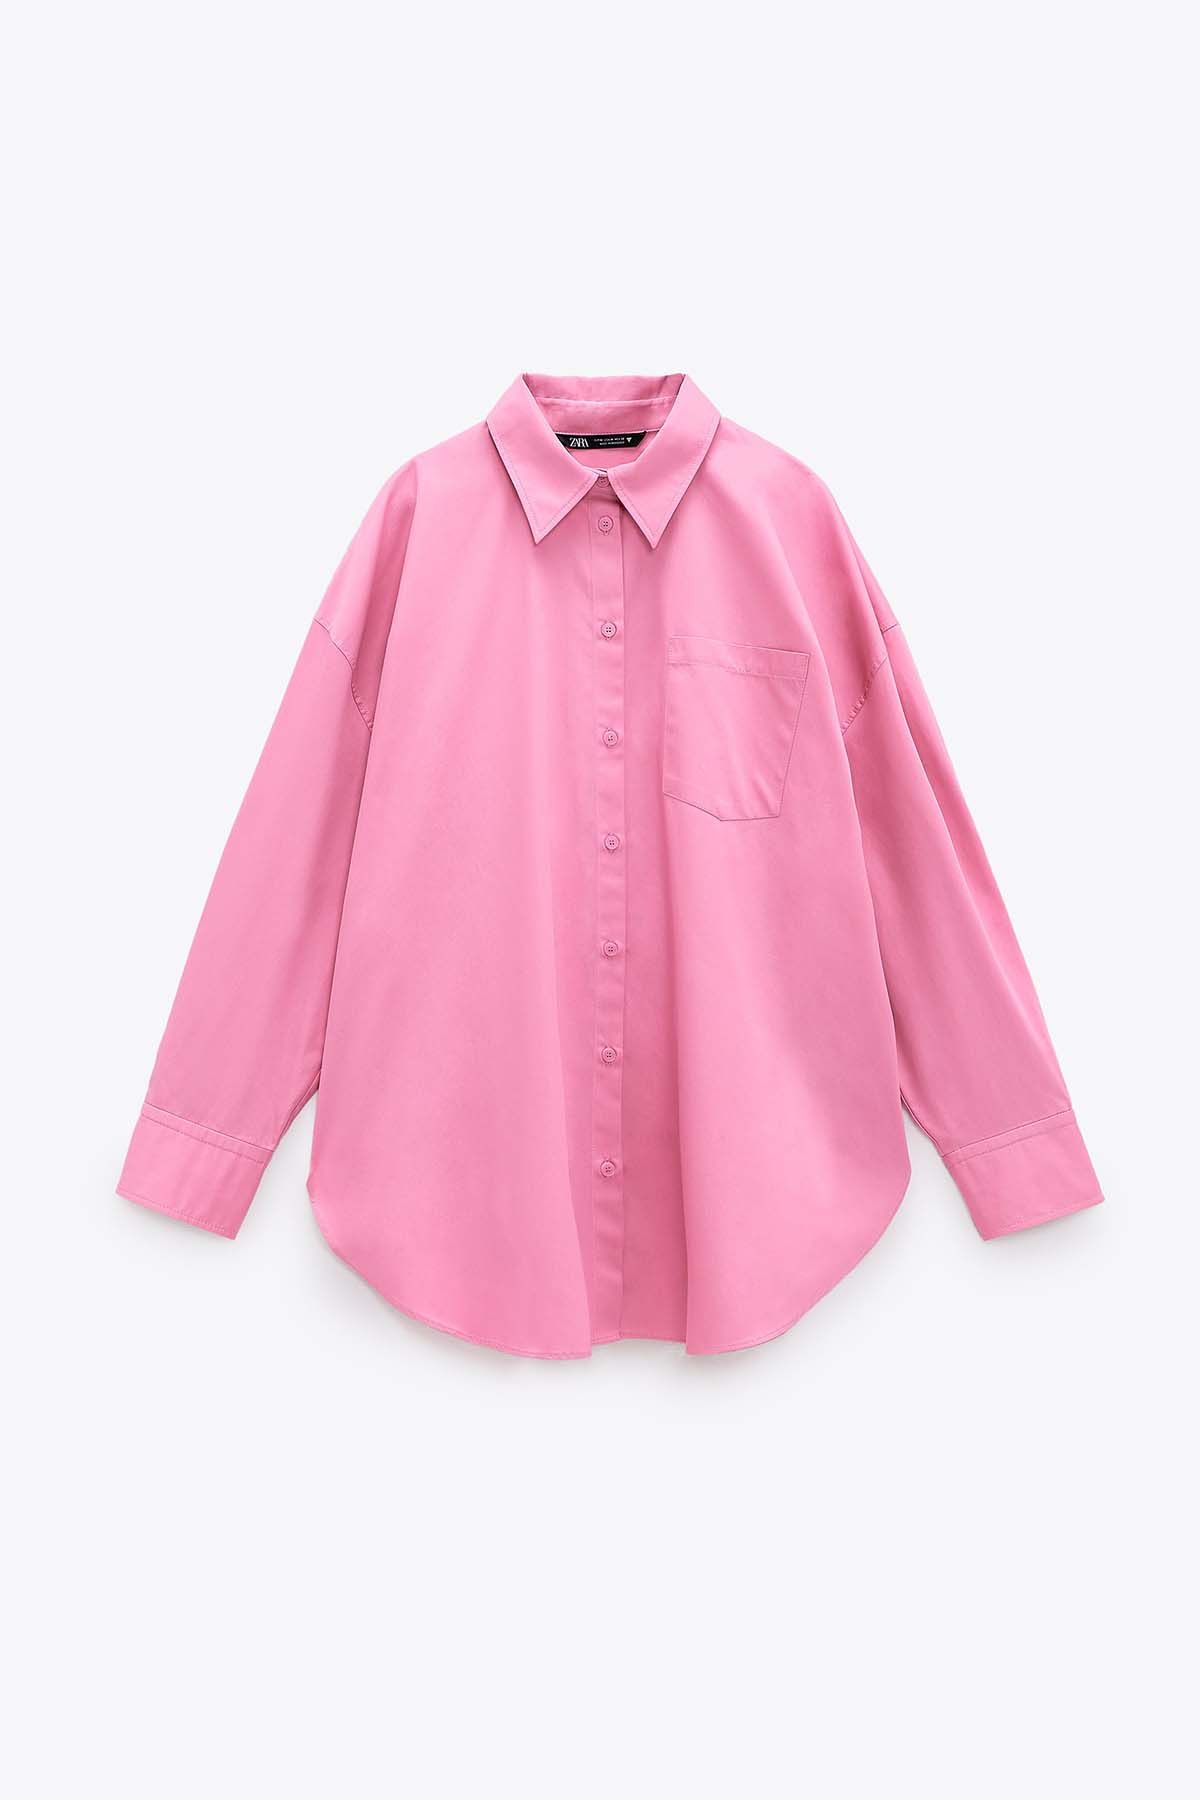 mecanismo Procesando habla Zara tiene la camisa rosa de Zendaya y Kylie Jenner (pero barata)